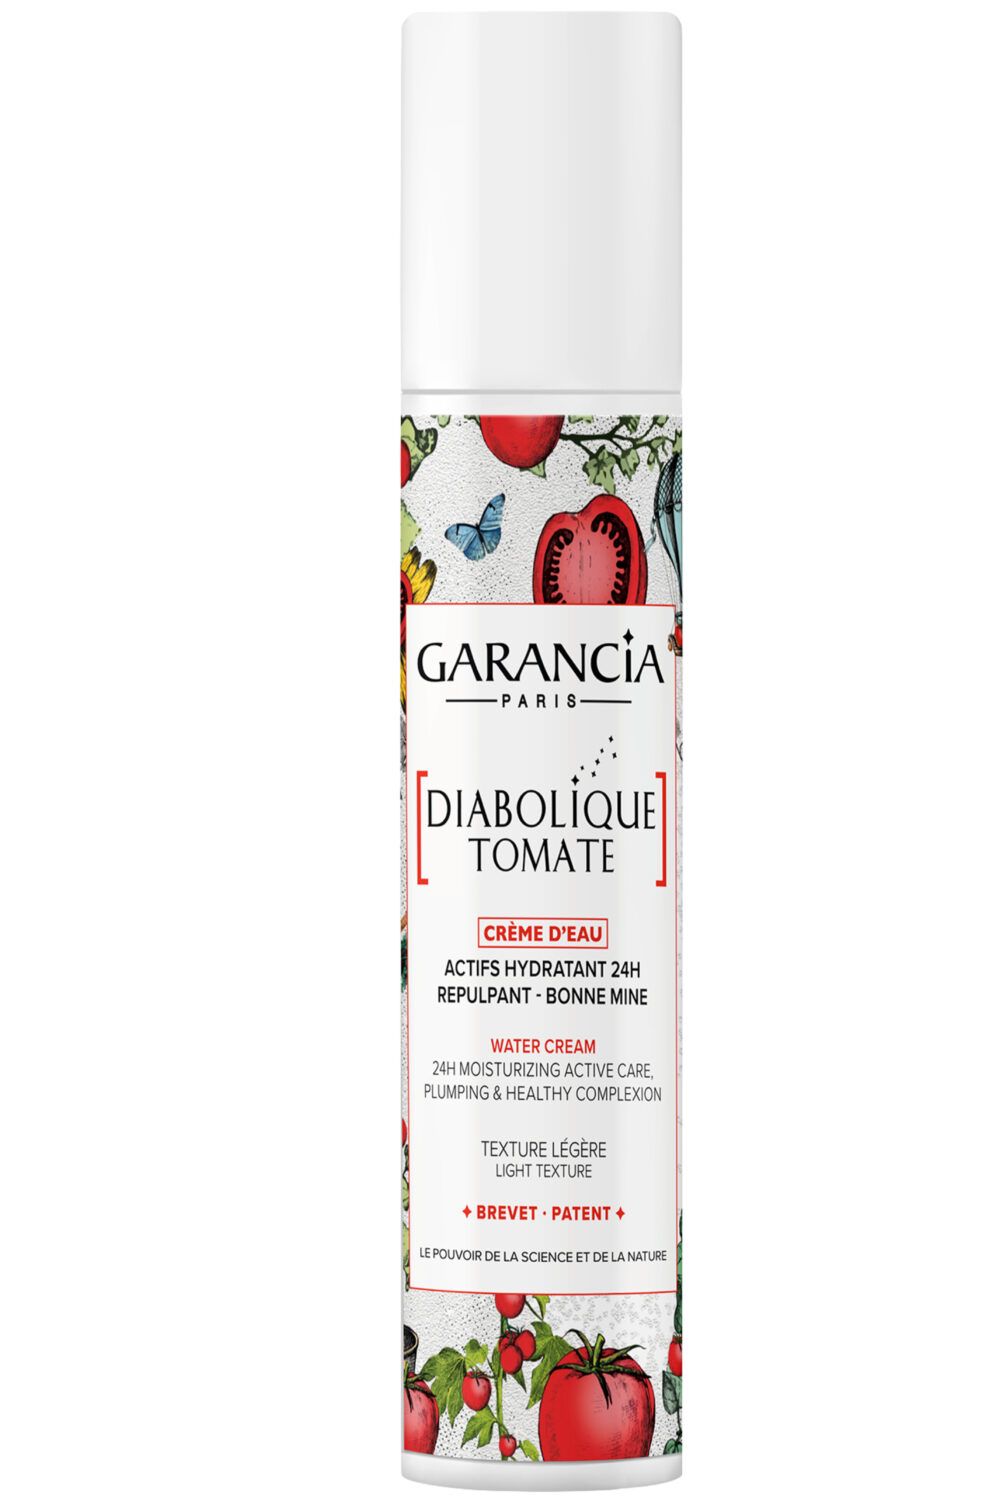 Garancia - Diabolique Tomate Crème d'eau Edition Limitée